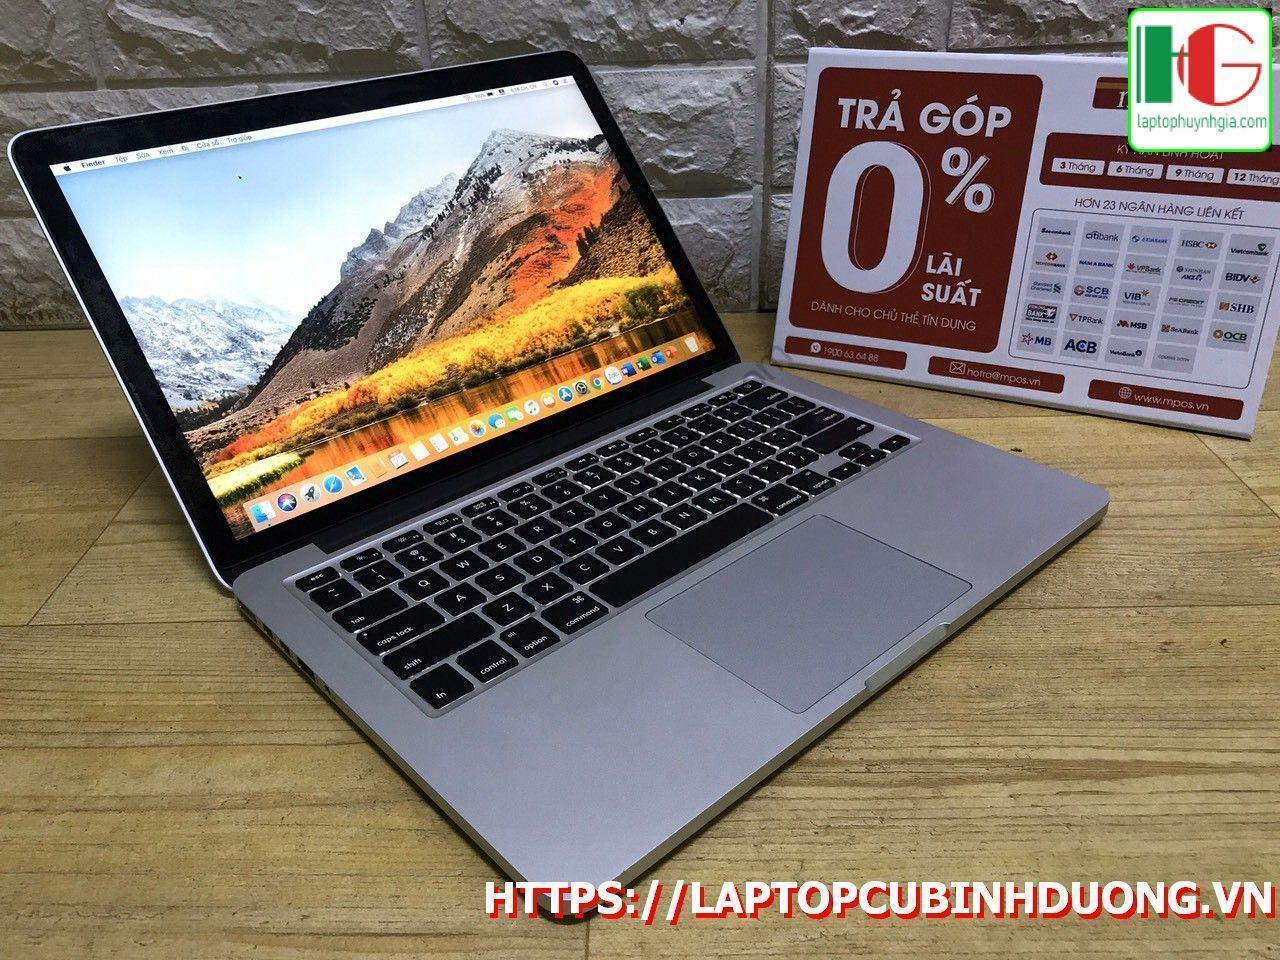 Laptop Macbook Pro 20150i55 Ram8g Ssd 128g Laptopcubinhduong.vn Copy [kích Thước Gốc] Result